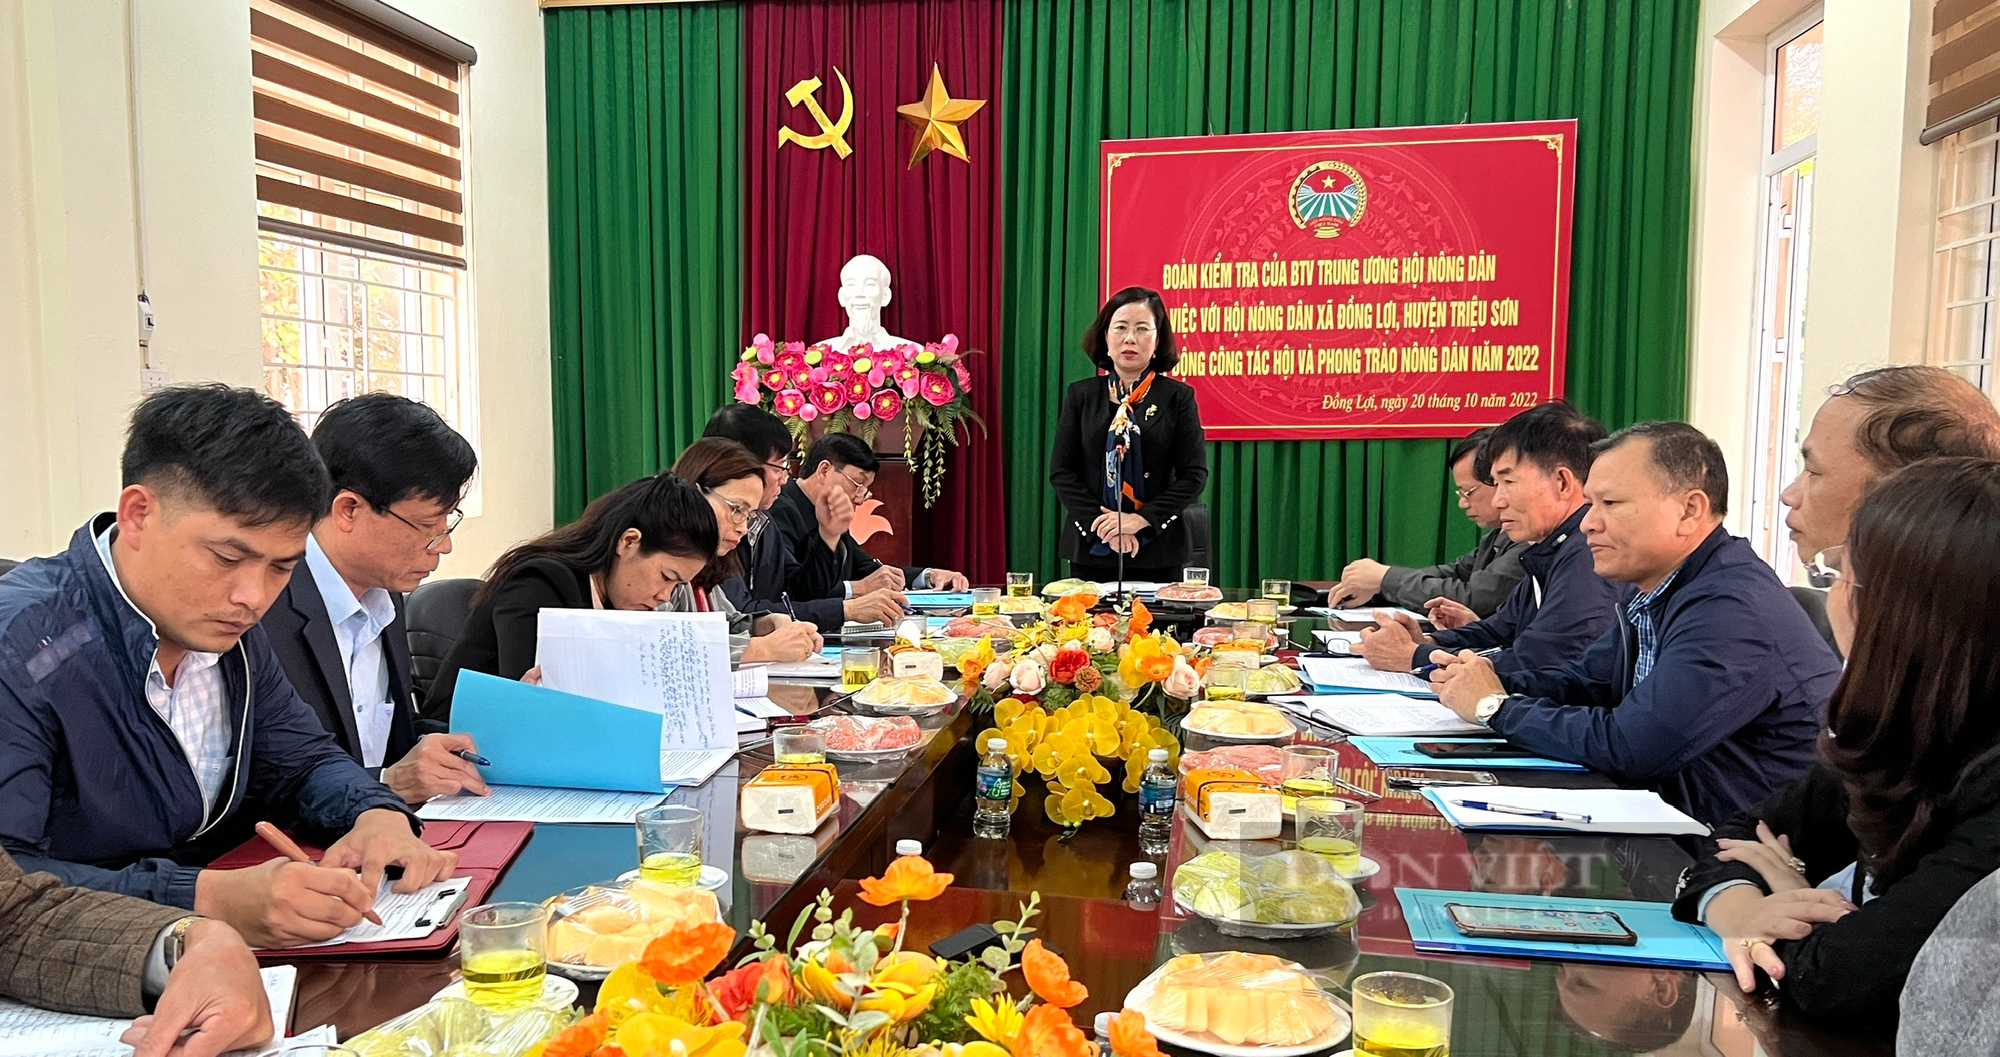 Phó Chủ tịch Trung ương Hội NDVN Bùi Thị Thơm kiểm tra công tác Hội và phong trào nông dân 2022 tại Thanh Hóa- Ảnh 5.